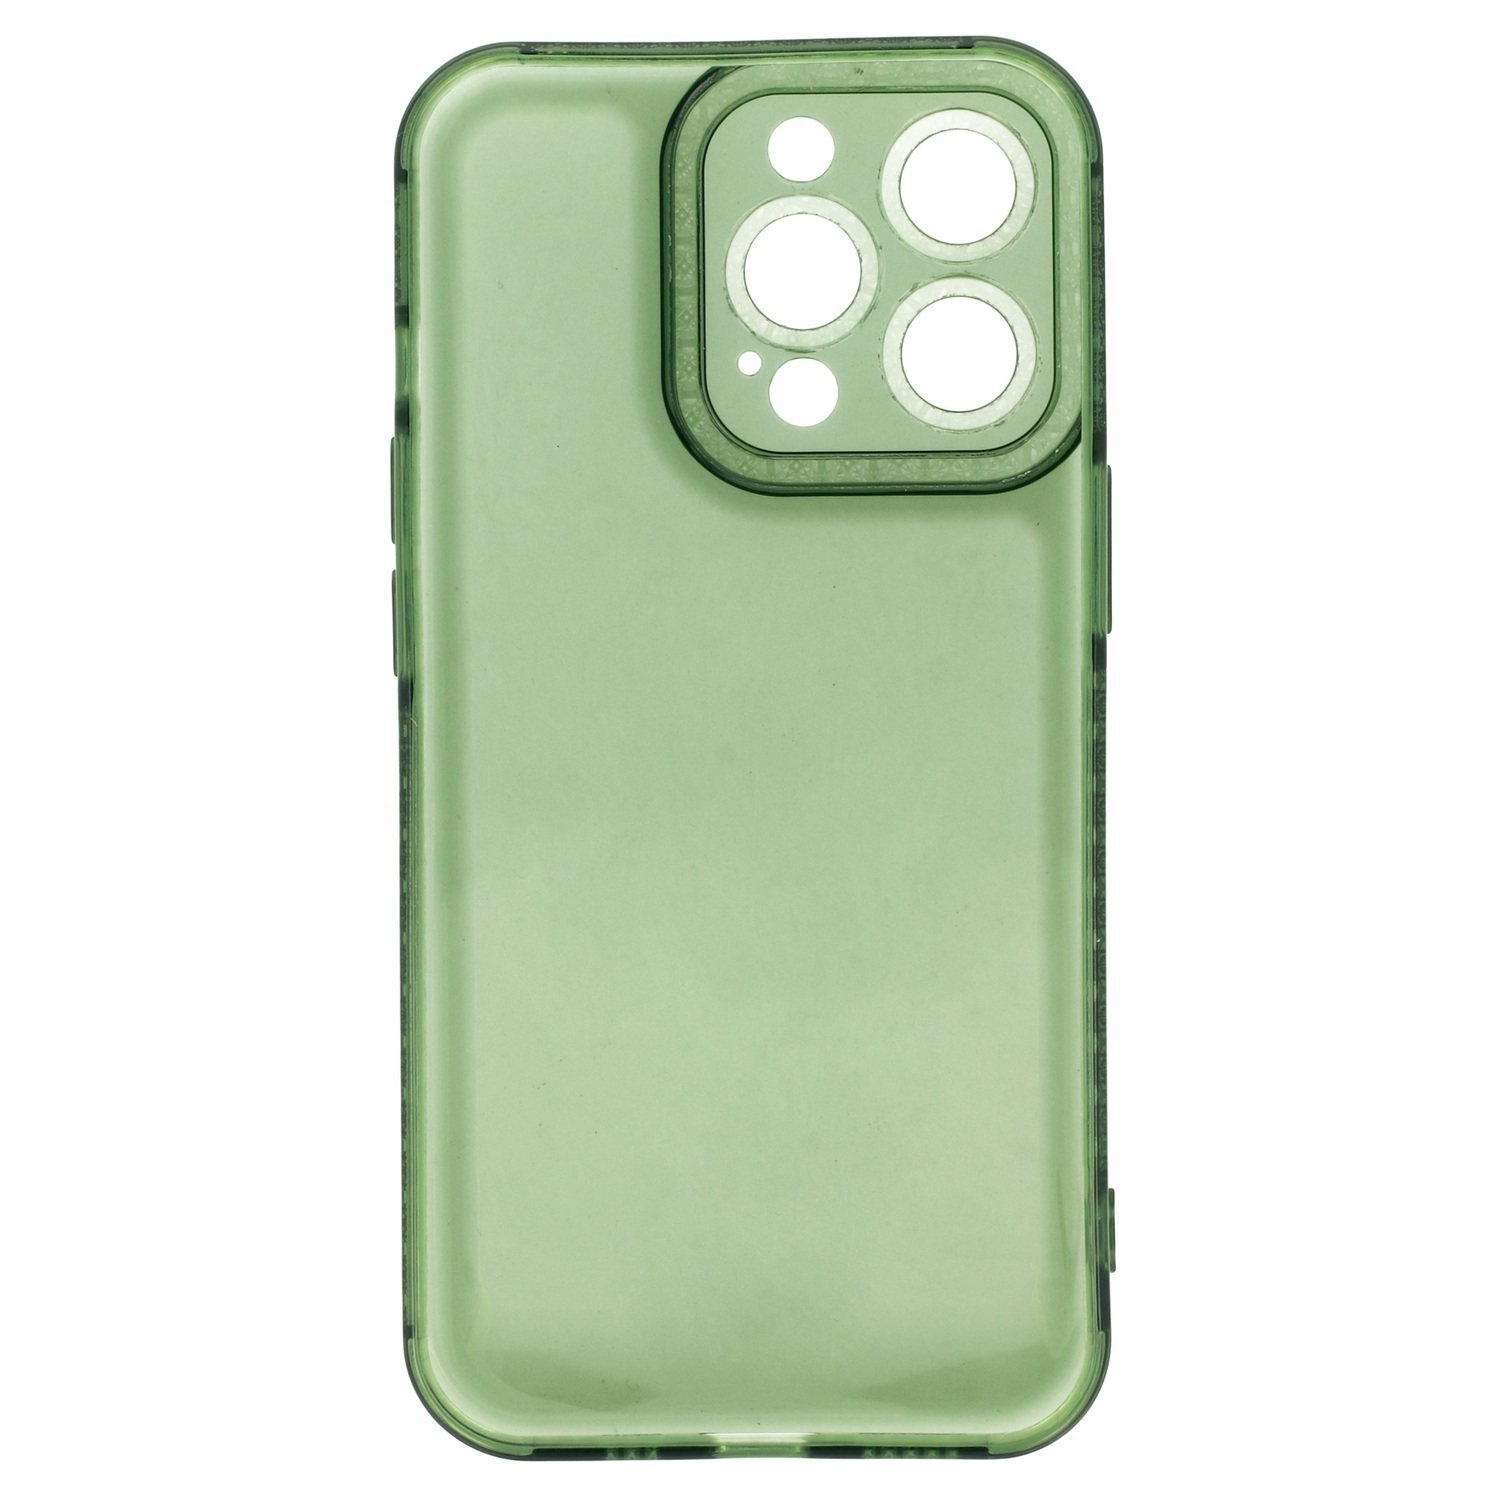 Pokrowiec etui silikonowe Crystal Diamond Case zielone Xiaomi Redmi 9A / 5